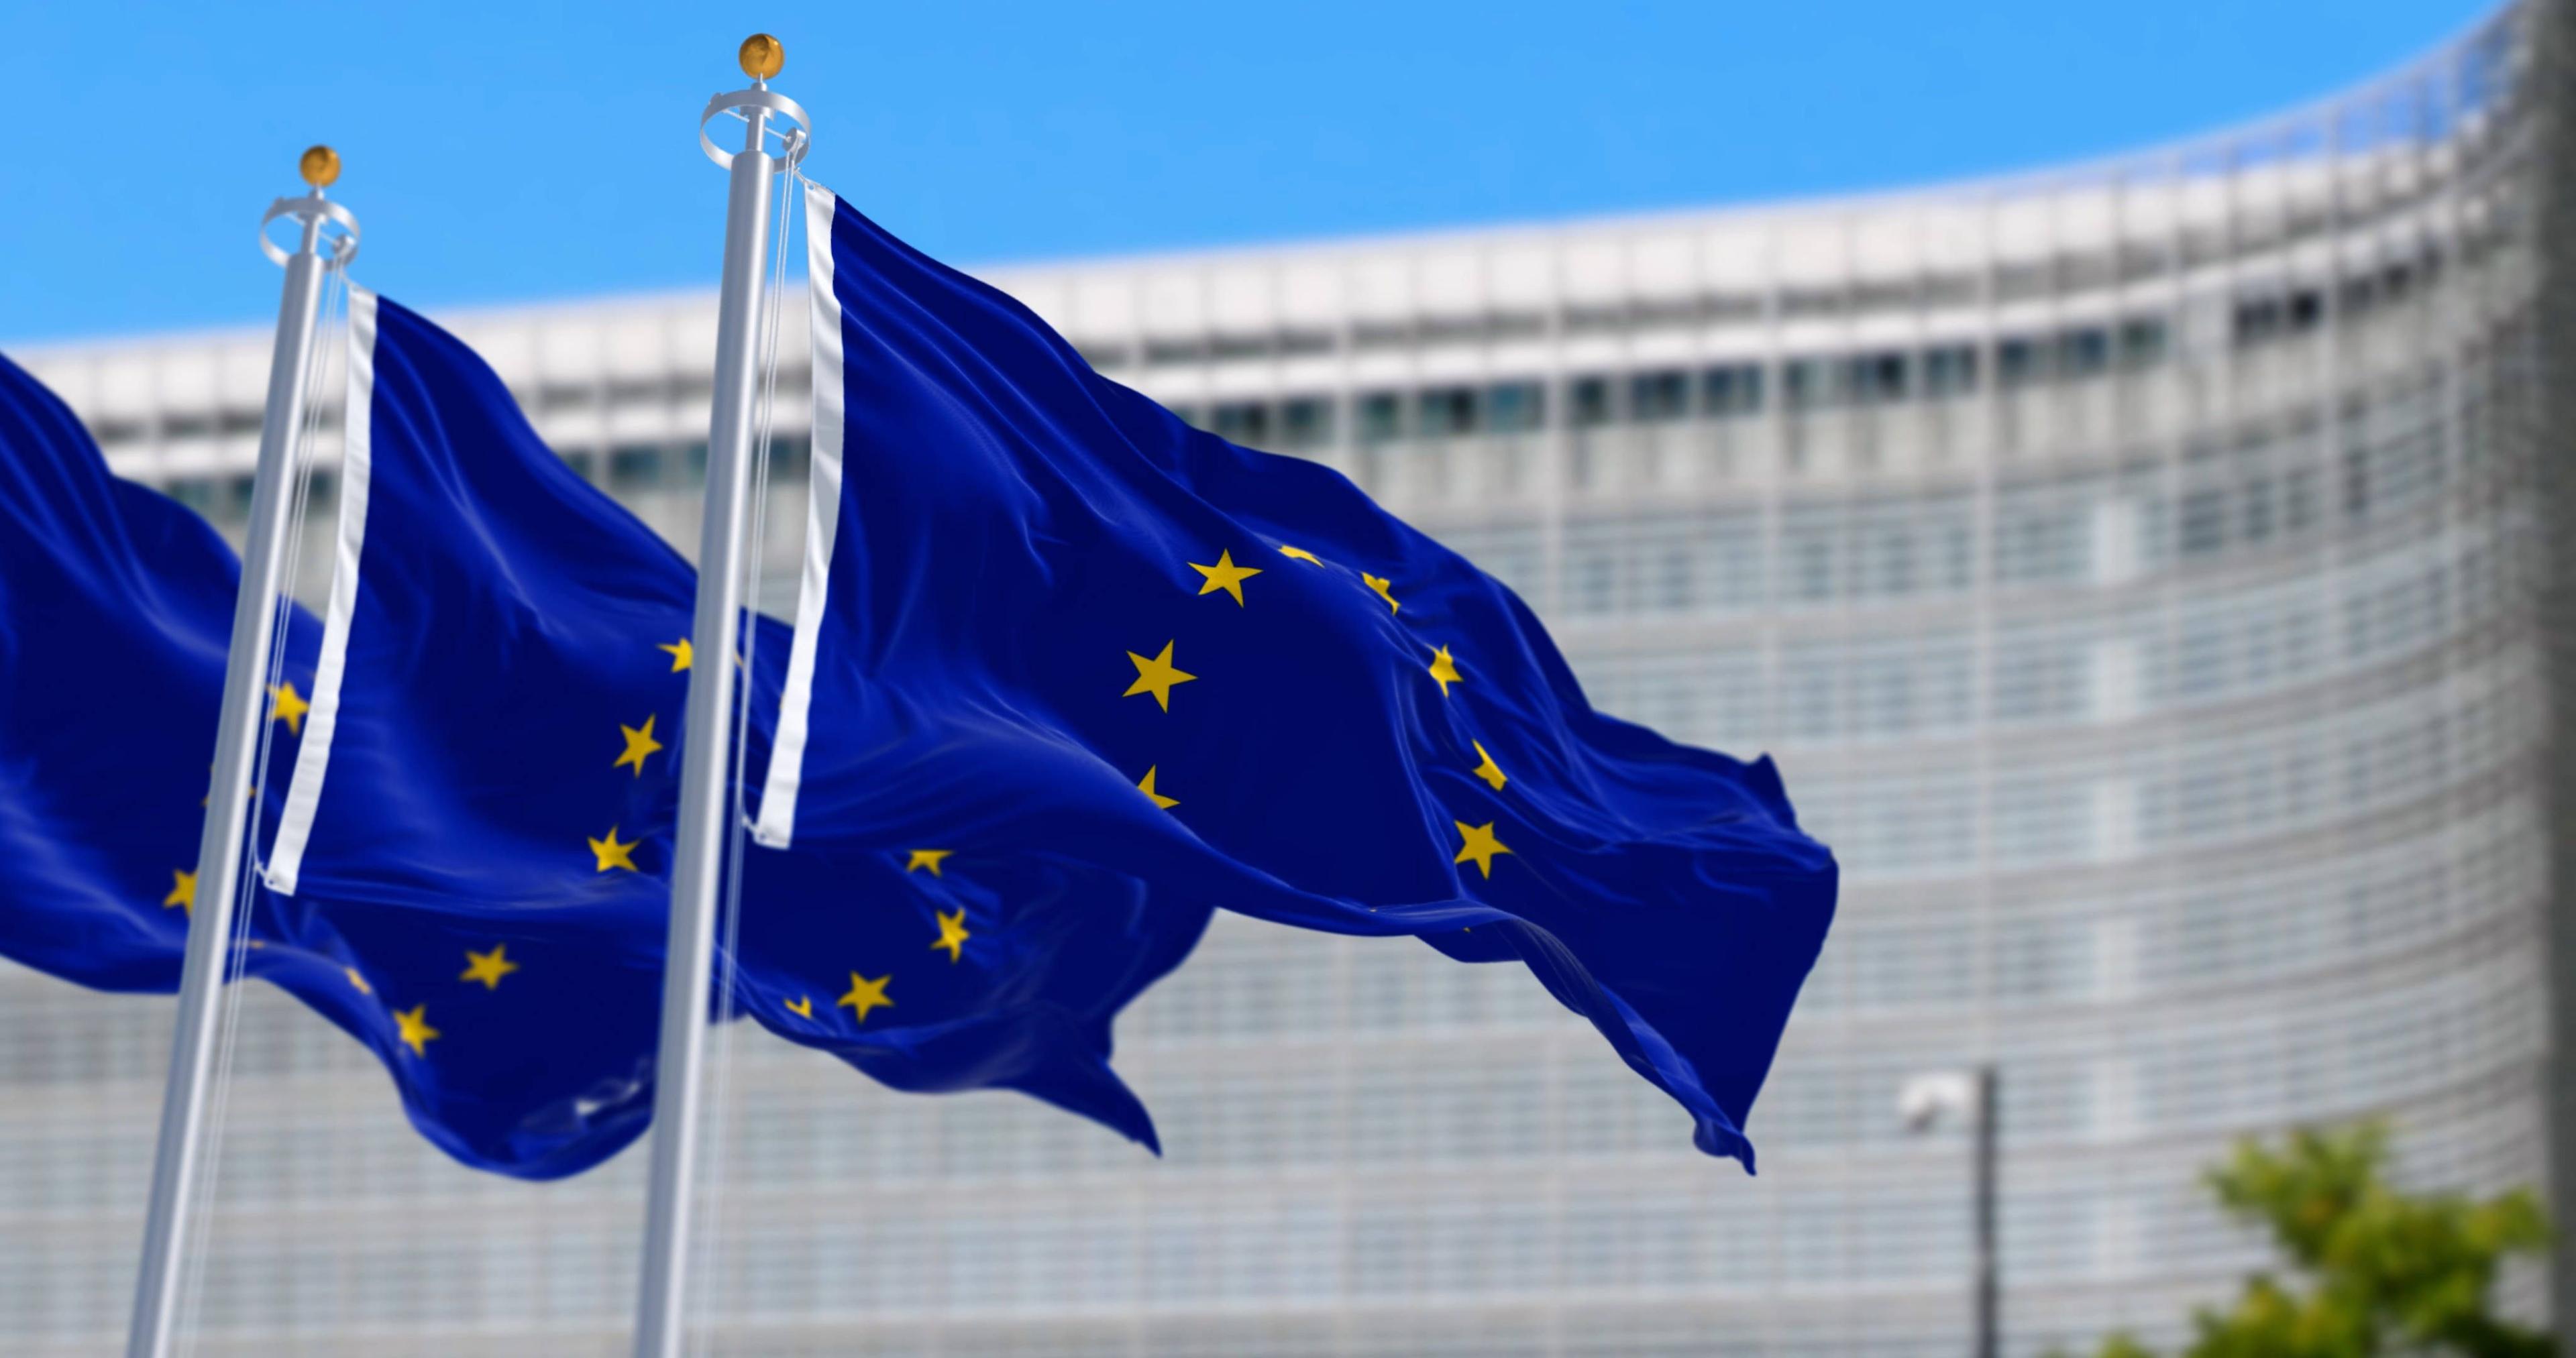 Die Flagge der Europäischen Union weht in Brüssel Die Flagge der Europäischen Union weht mit dem Sitz der Europäischen Kommission im Hintergrund. Politische und wirtschaftliche Union